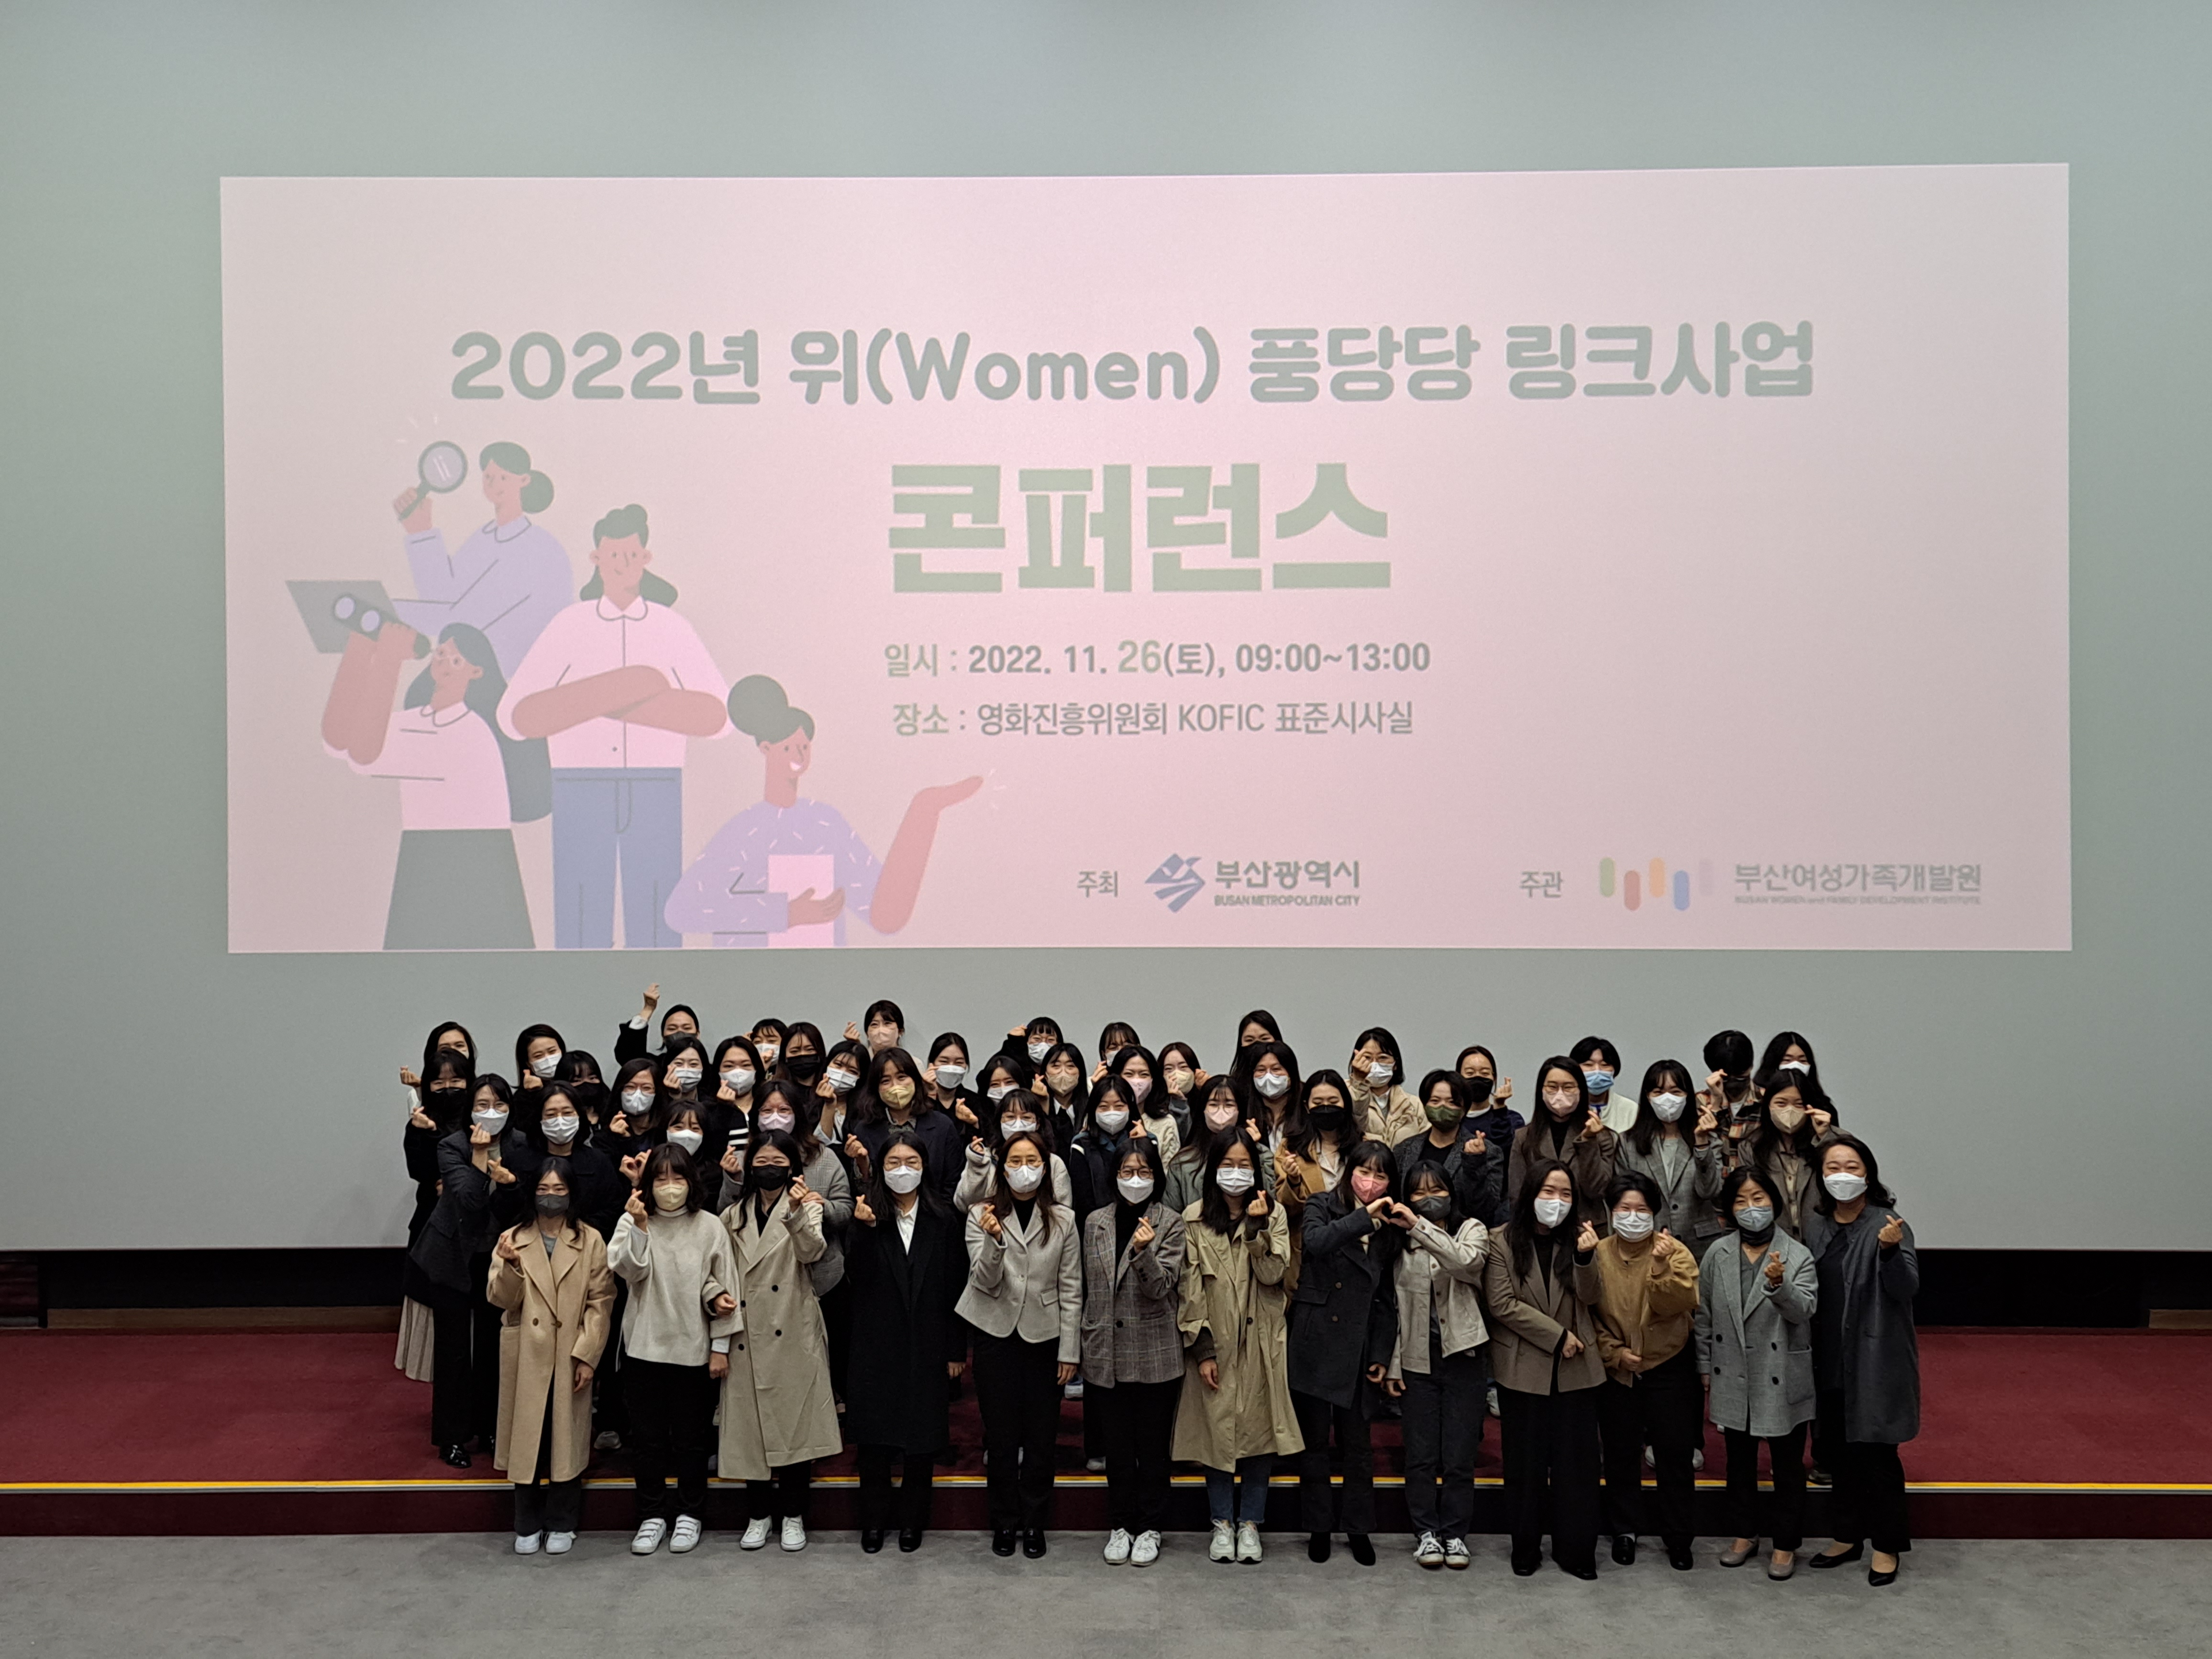 <2022년 위(Women)풍당당 링크사업 콘퍼런스> 개최